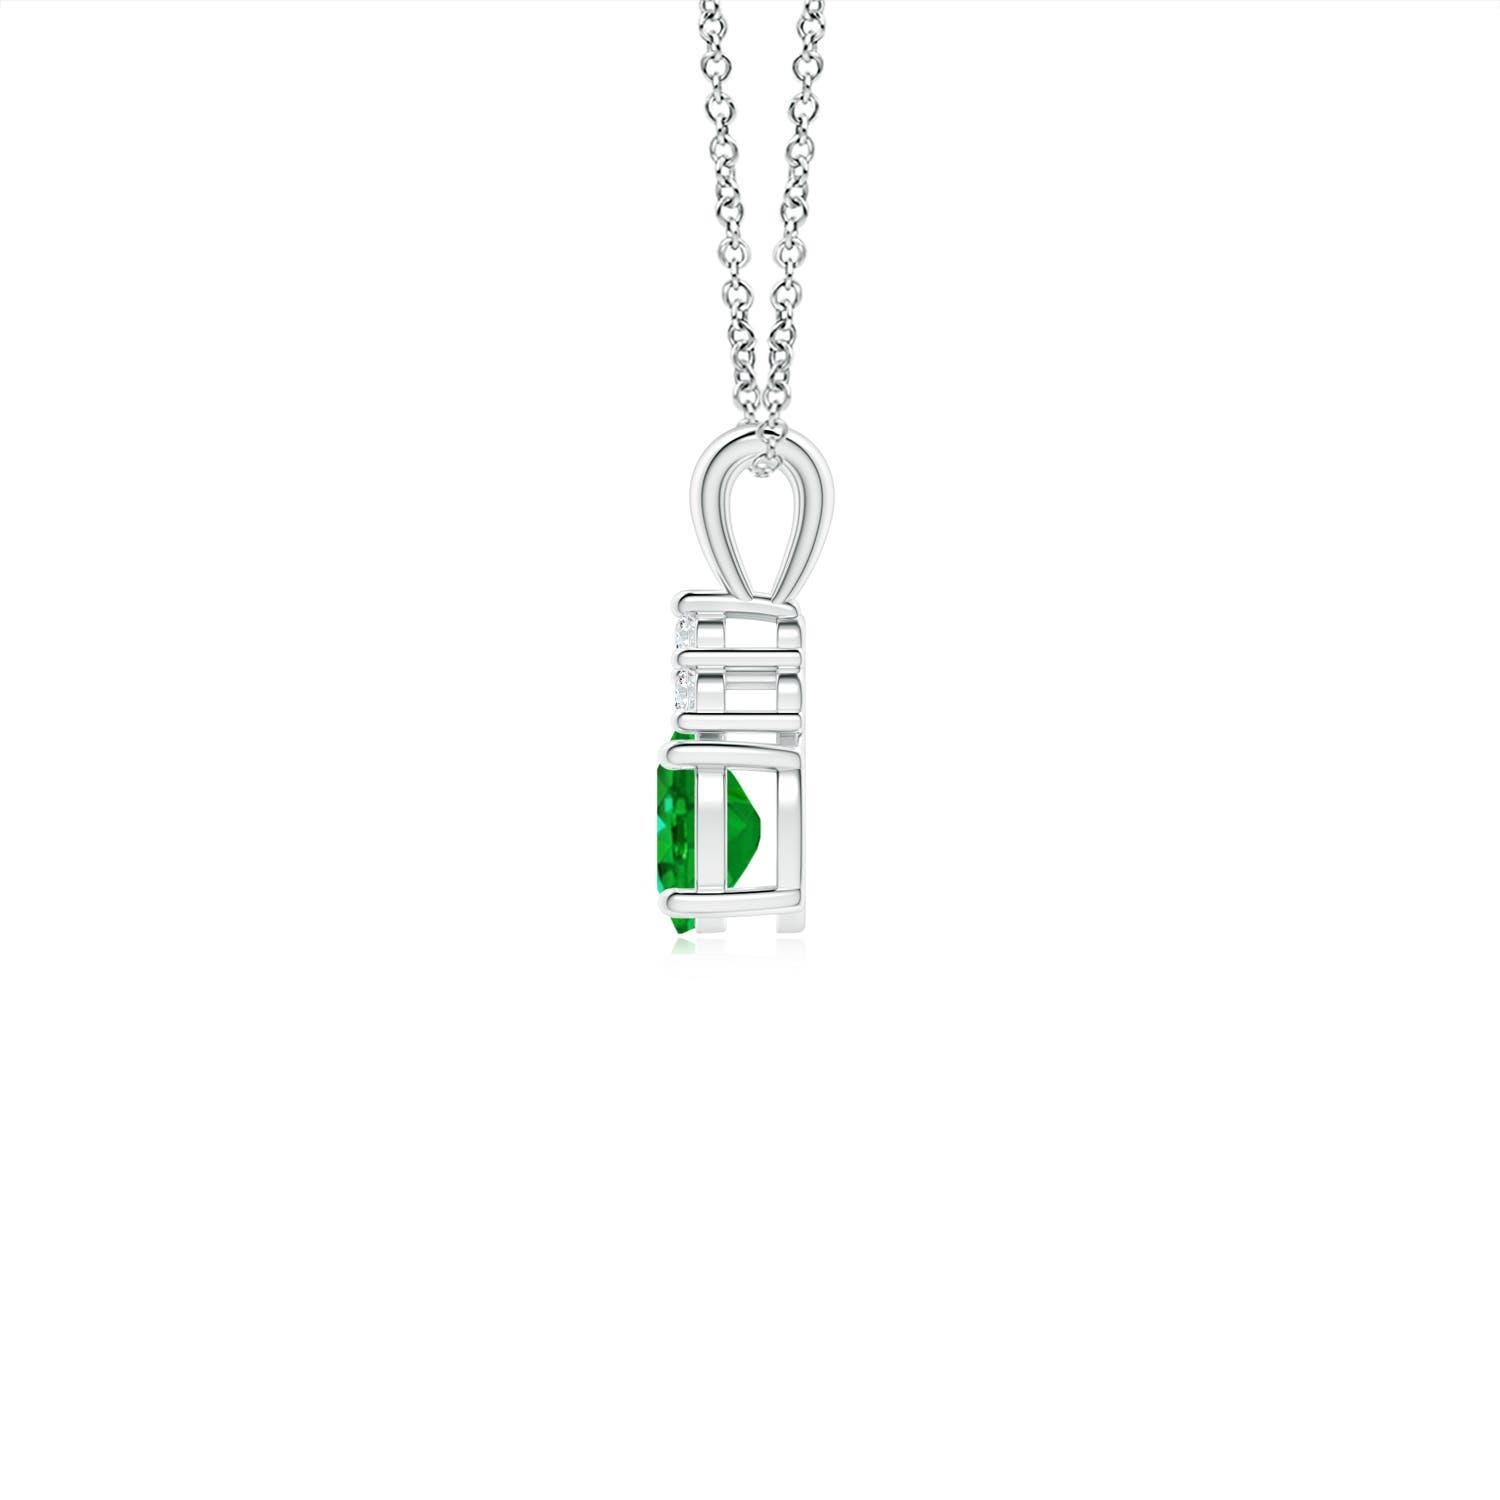 Serti en platine, ce pendentif solitaire classique en émeraude présente un mélange parfait de style et d'élégance. Il est orné d'une émeraude verte luxuriante et de trois diamants ronds étincelants sur le dessus. Relié à un anneau en V lustré, ce